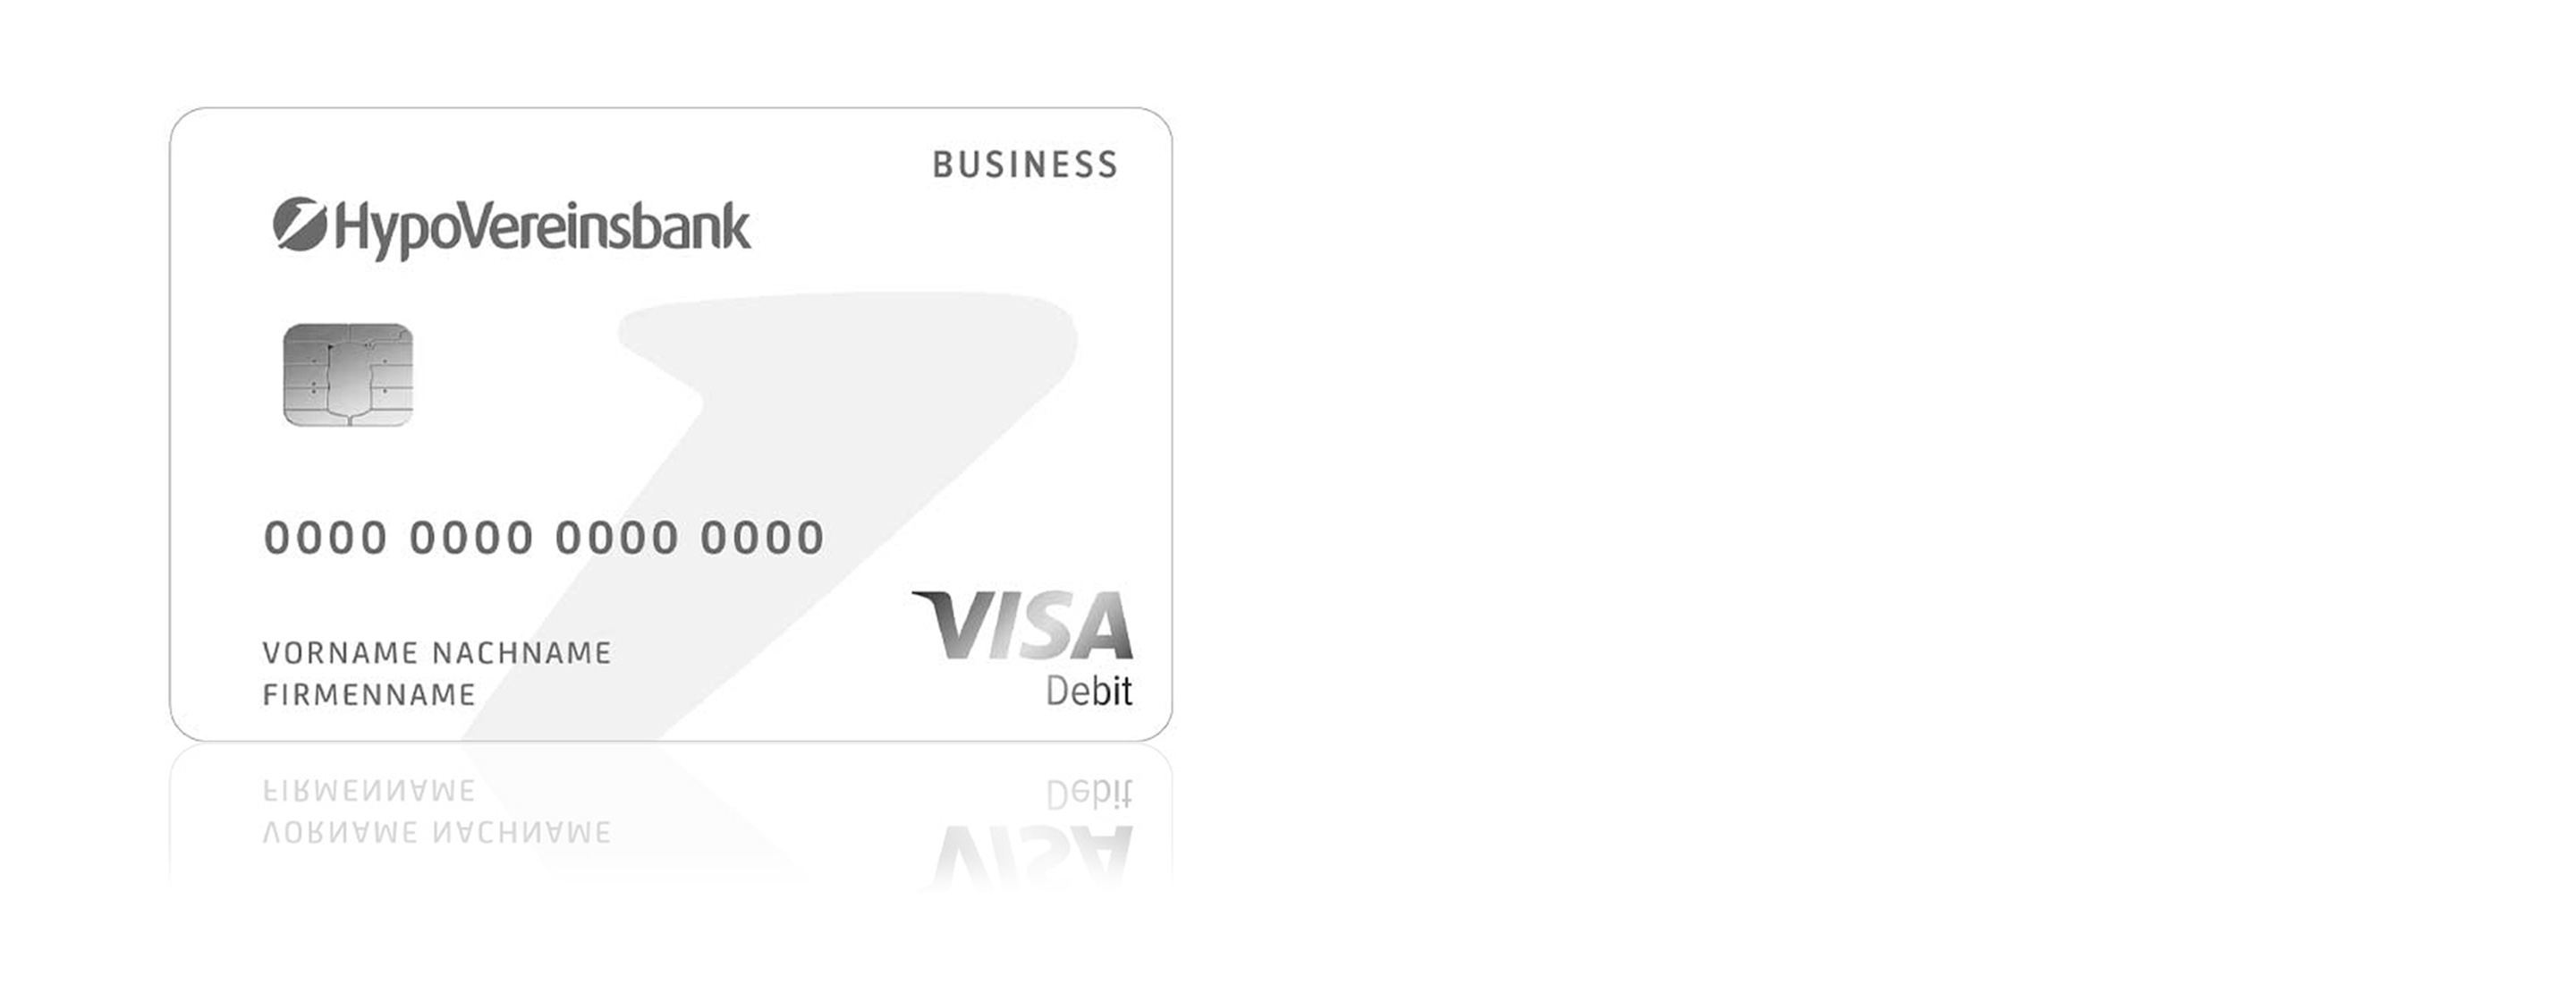 HVB Visa Debit Business Card